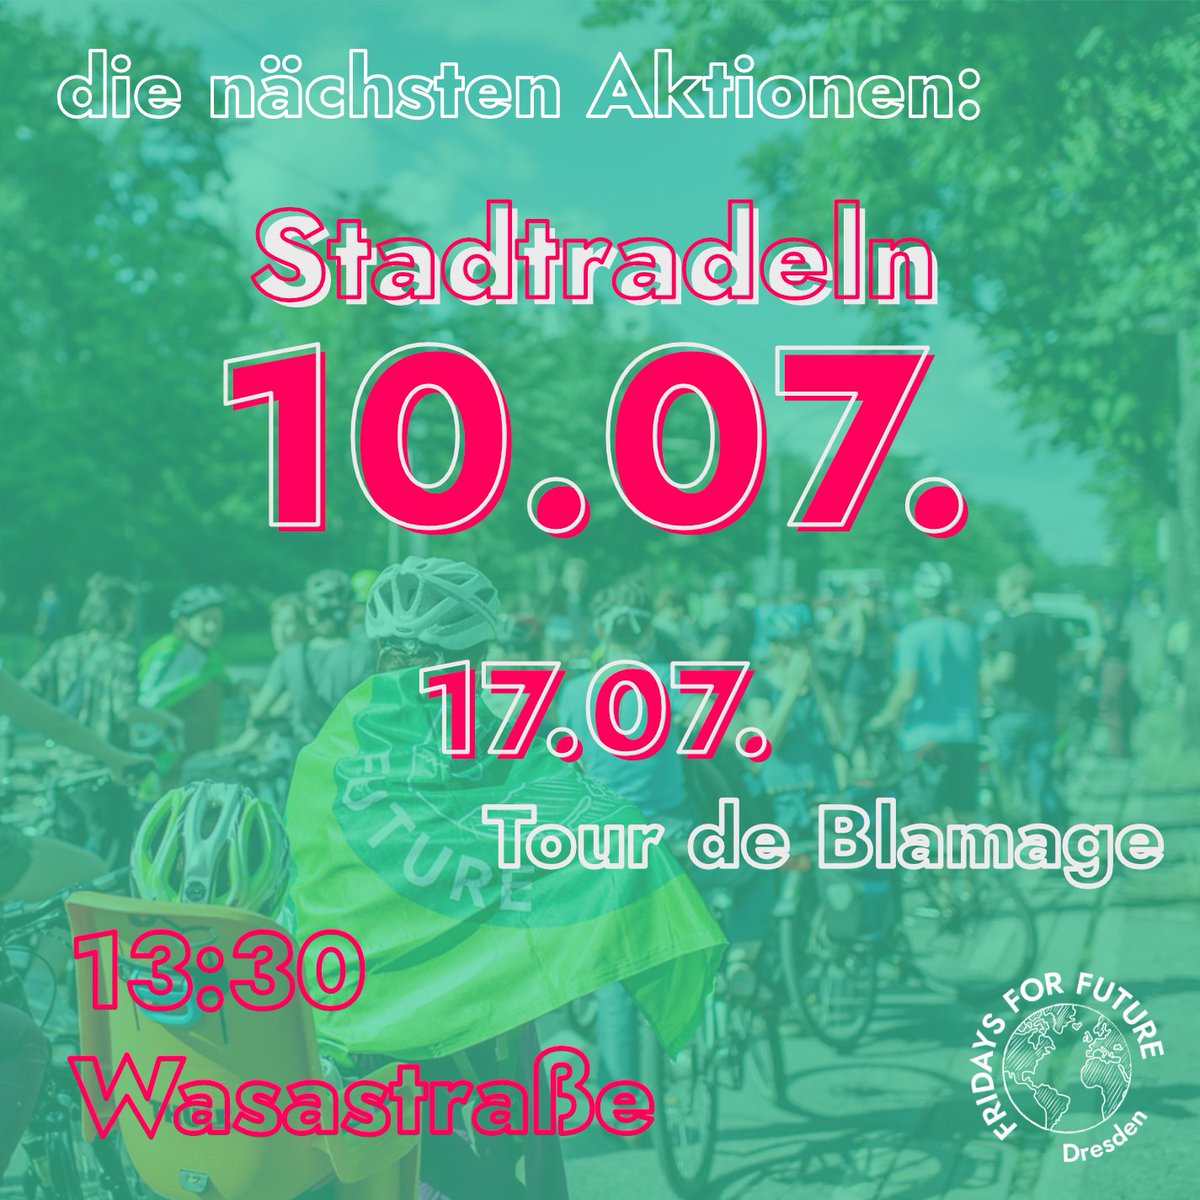 Am 10.07. werden wir bei einer Fahrraddemo Orte besuchen, an denen #Dresden den Ausbau des Radverkehrs bisher vermasselt hat und dabei Kilometer für's #Stadtradeln sammeln.🚲 Wir treffen uns 13:30 an der Wasastraße (vor dem Wasaplatz) mit Fahrrädern, Masken und genug zu Trinken💚